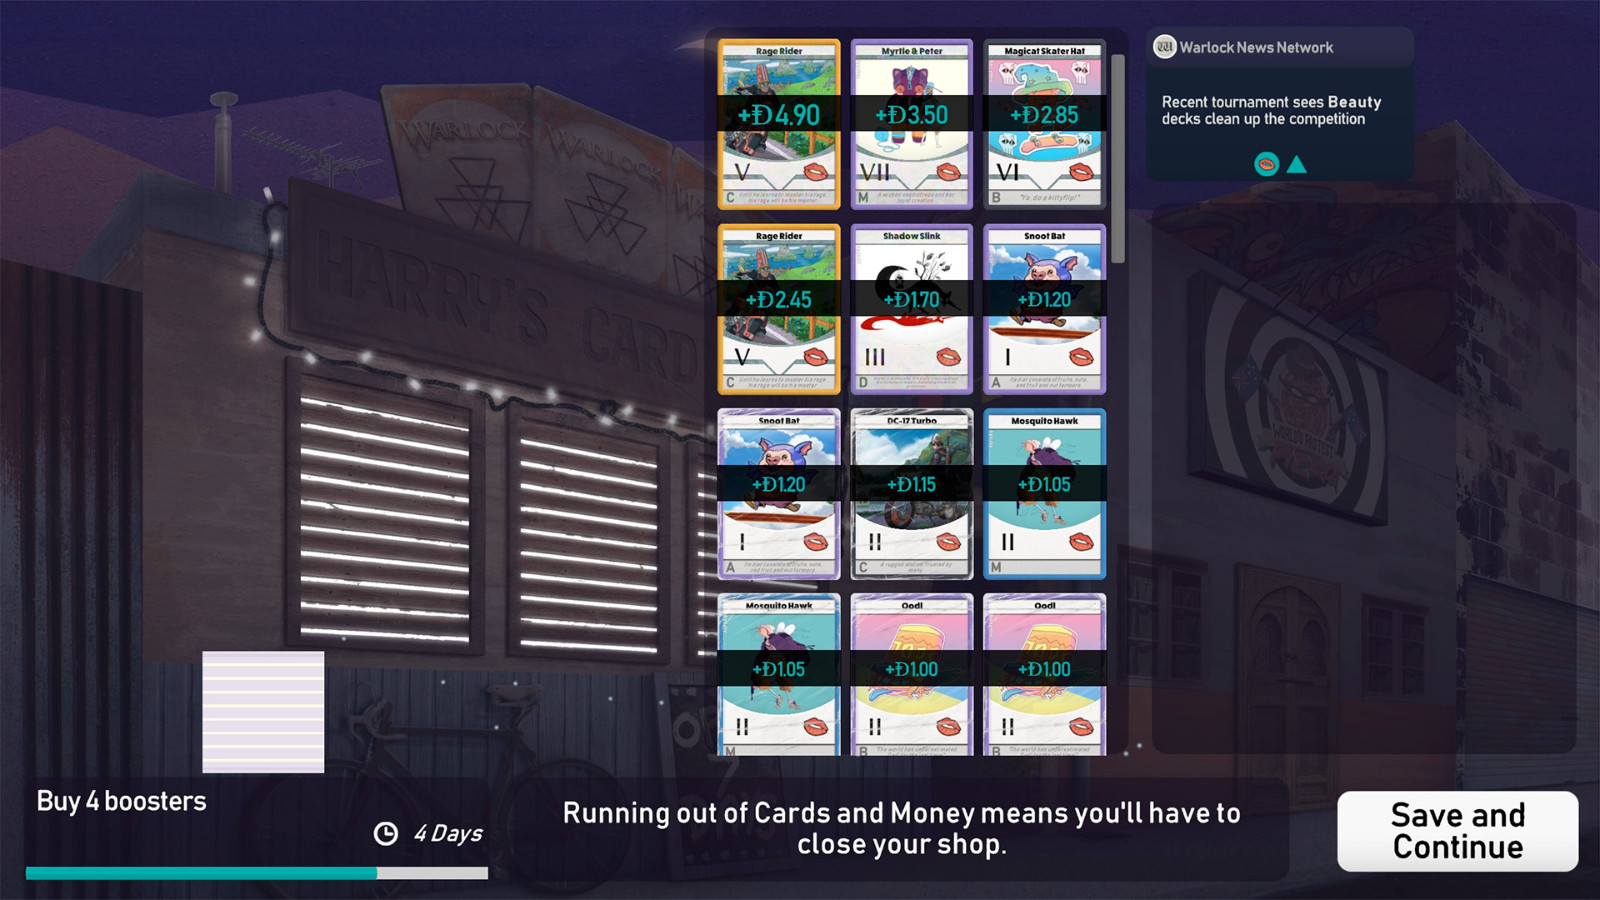 商店经营模拟游戏《卡牌之王》2月10日发售 支持中文